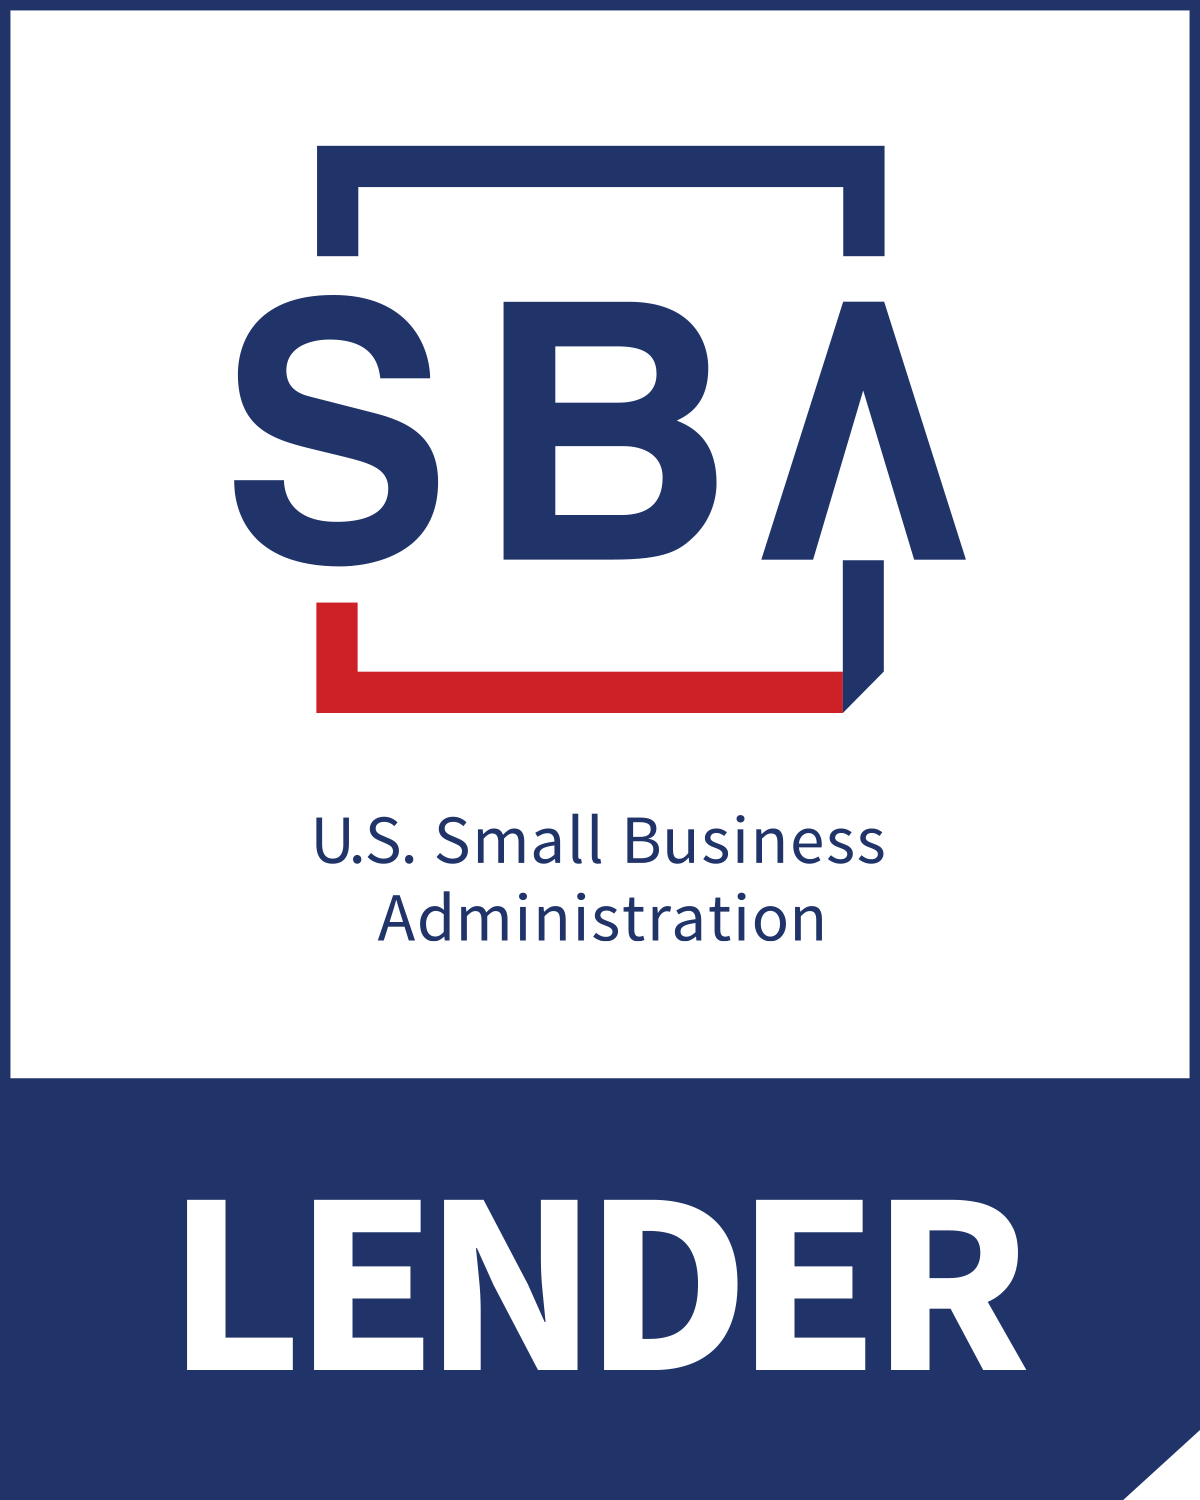 SBA Lender